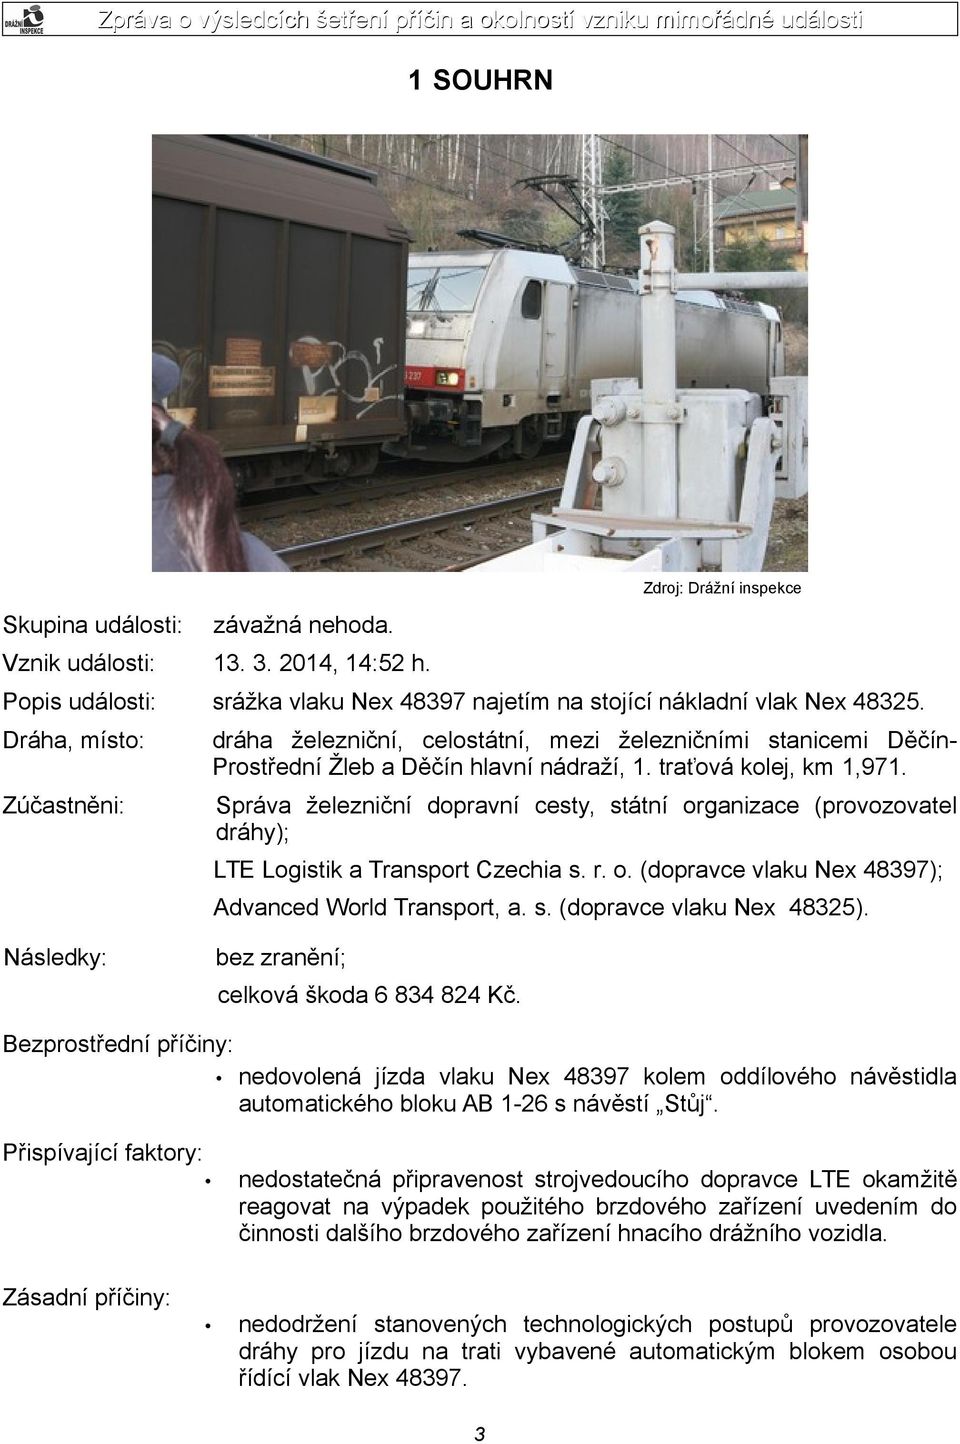 Správa železniční dopravní cesty, státní organizace (provozovatel dráhy); LTE Logistik a Transport Czechia s. r. o. (dopravce vlaku Nex 48397); Advanced World Transport, a. s. (dopravce vlaku Nex 48325).